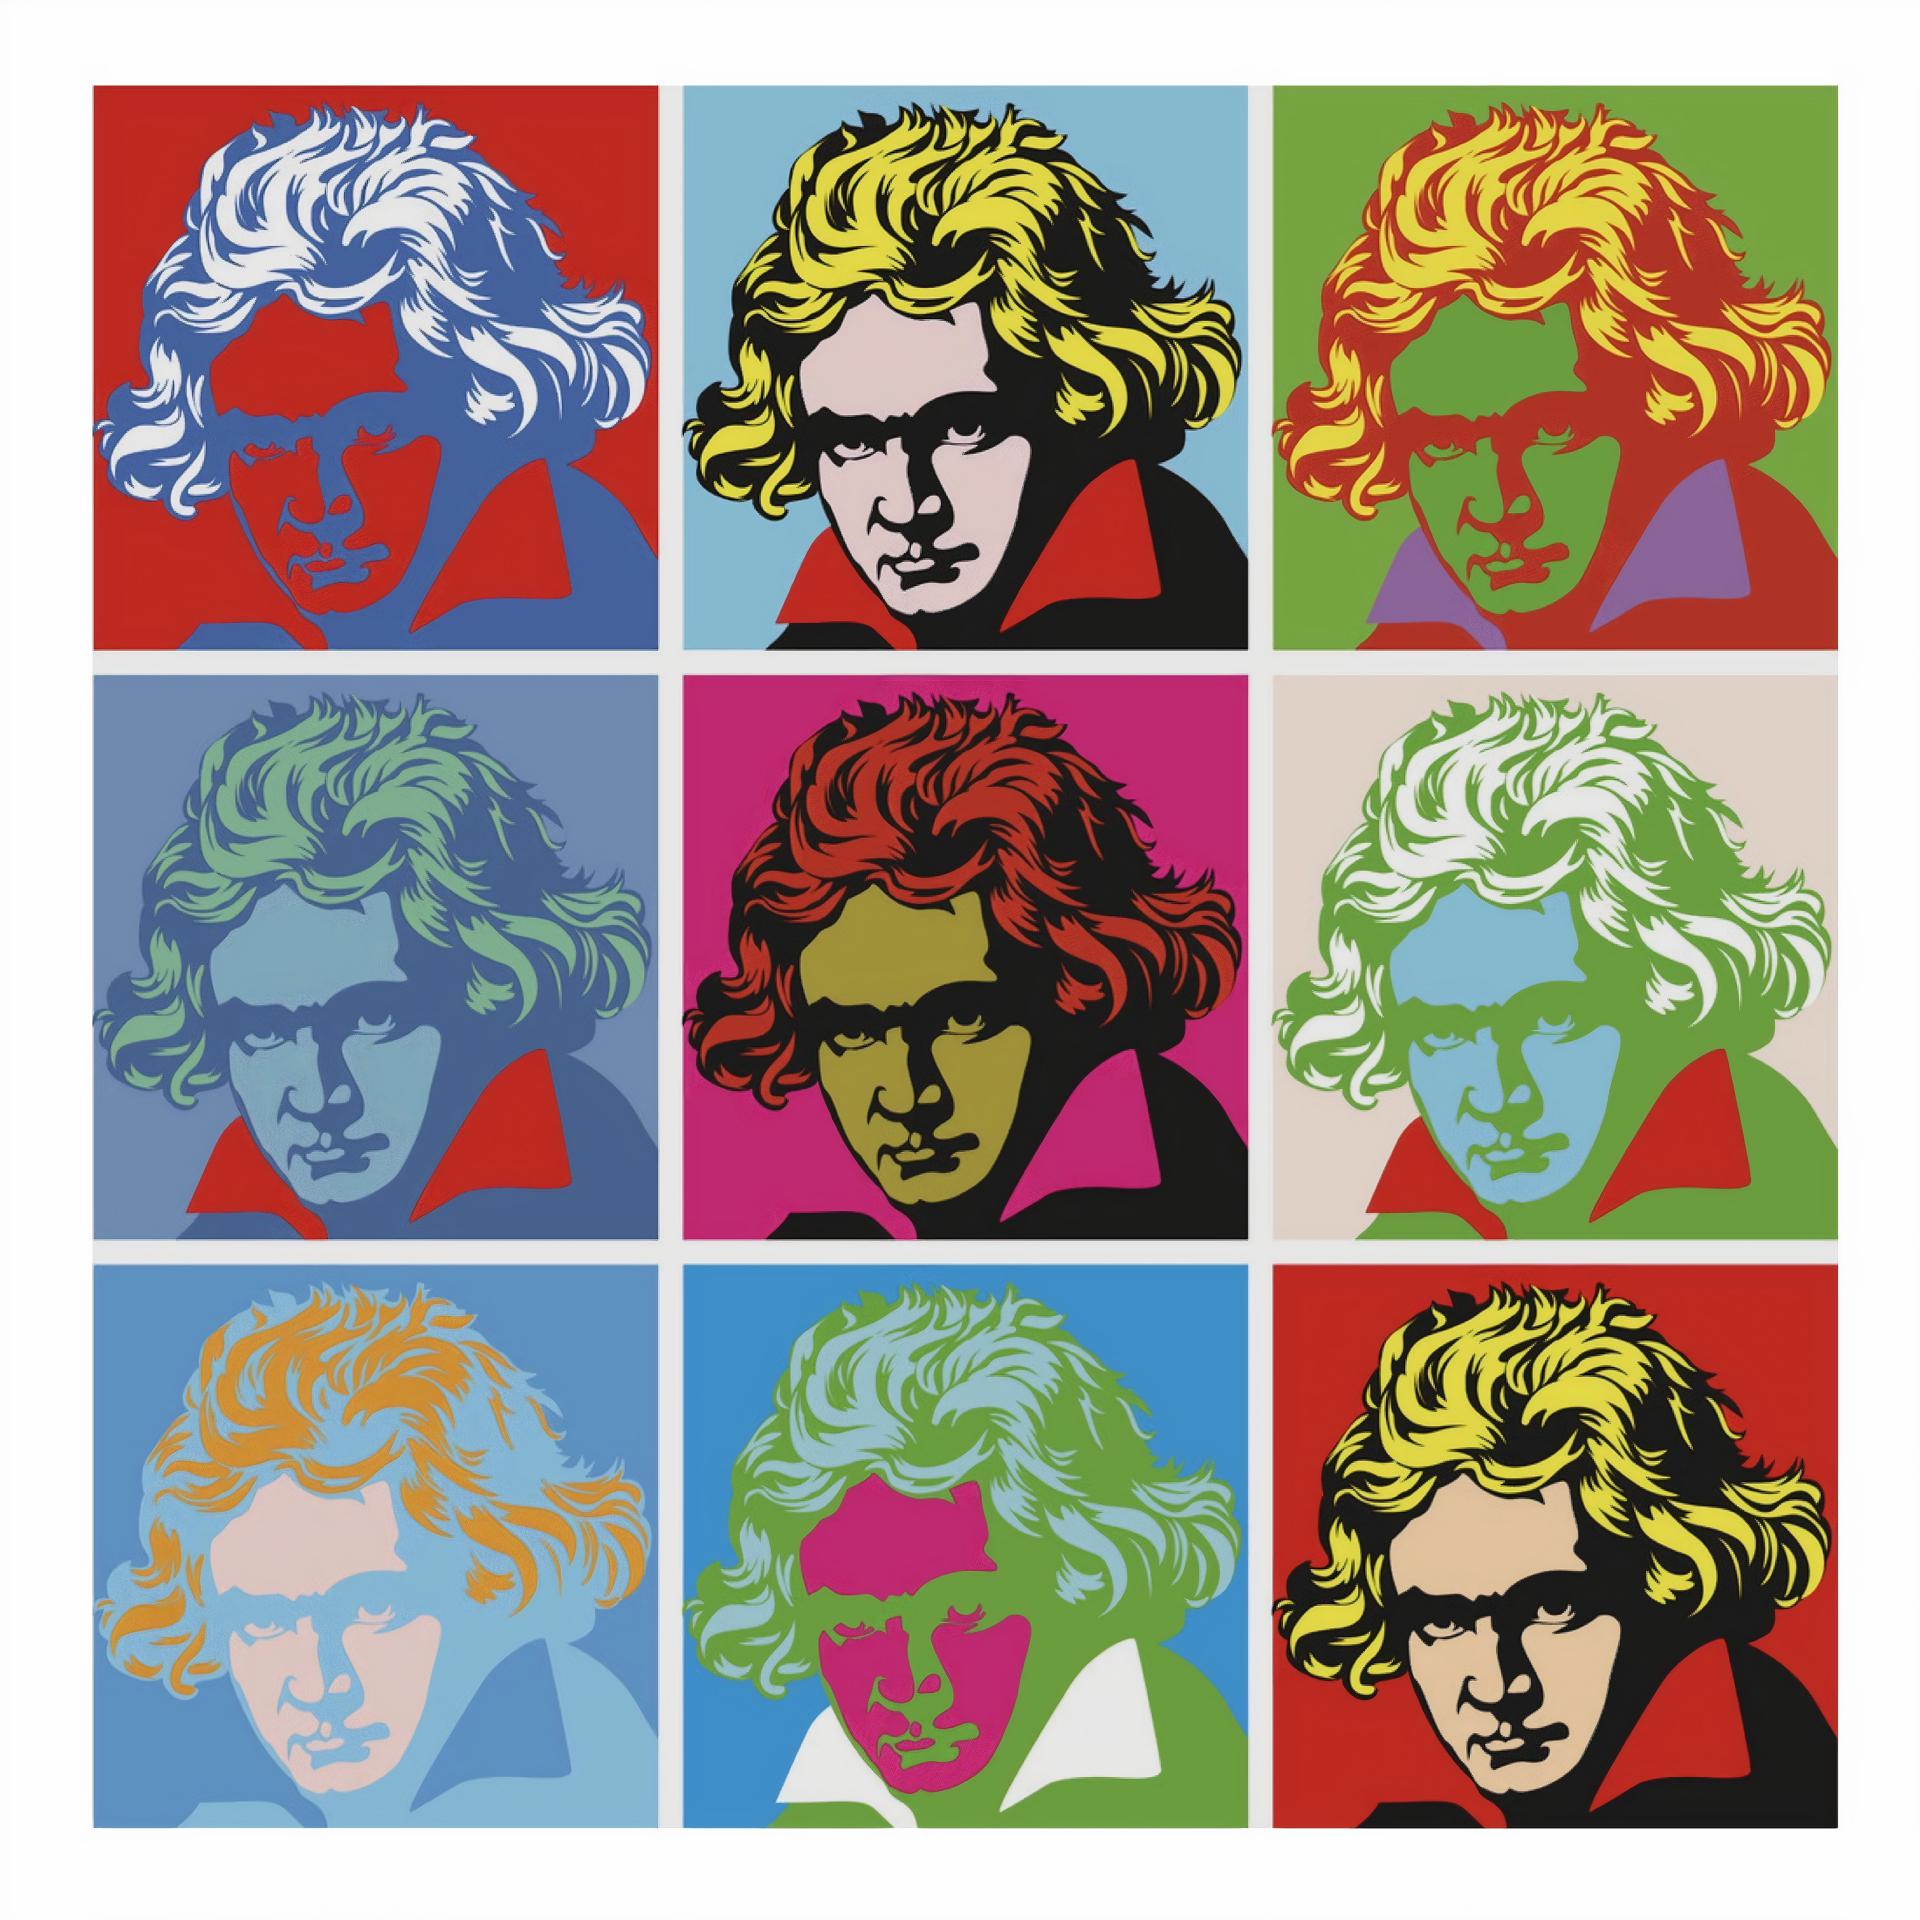 Постер альбома Beethoven Virus